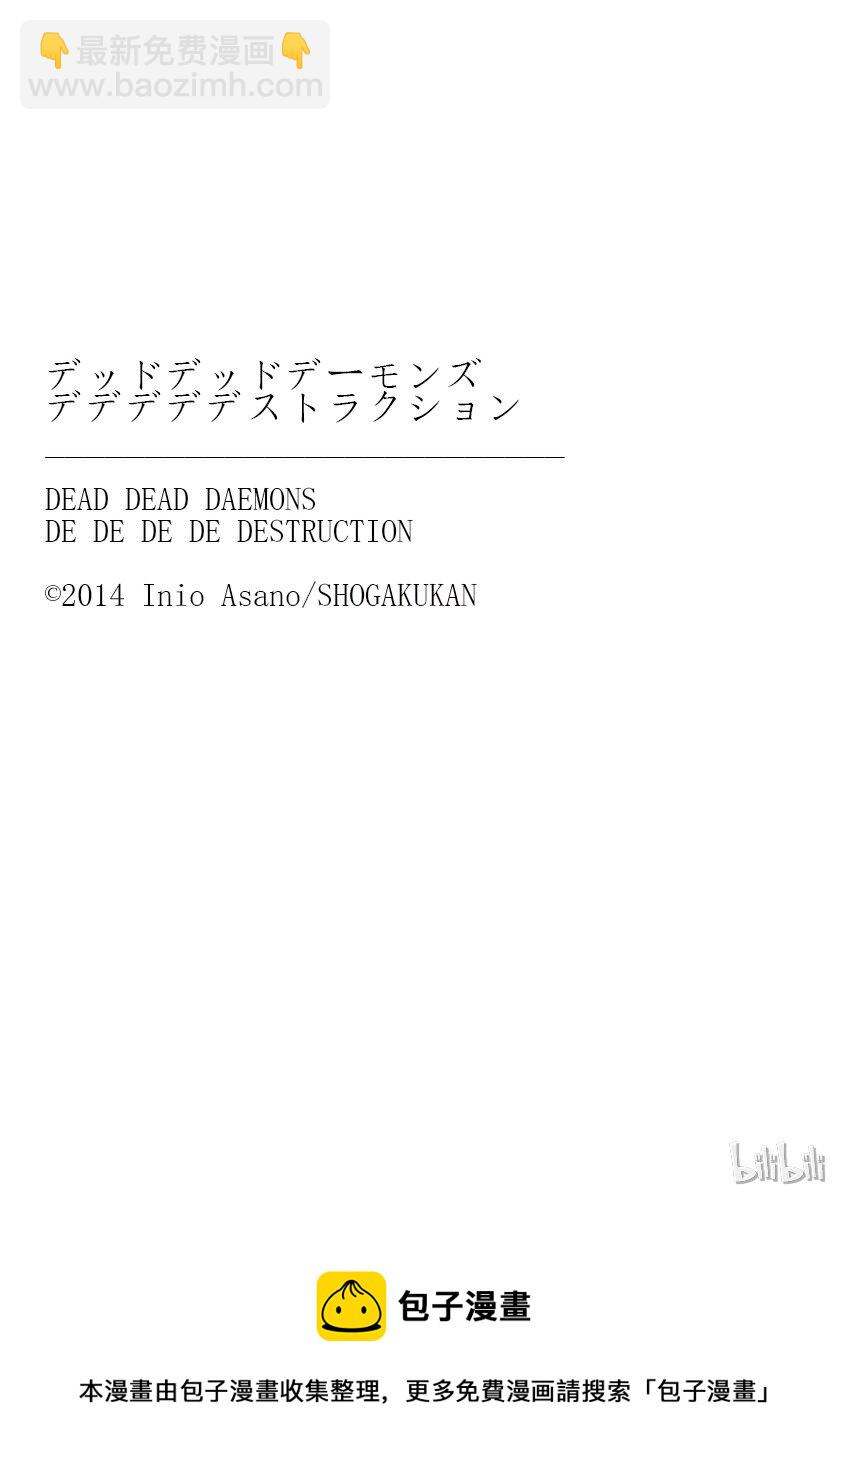 惡魔的破壞 DEAD DEAD DEMON'S DEDEDEDE DESTRUCTION - 007 - 3